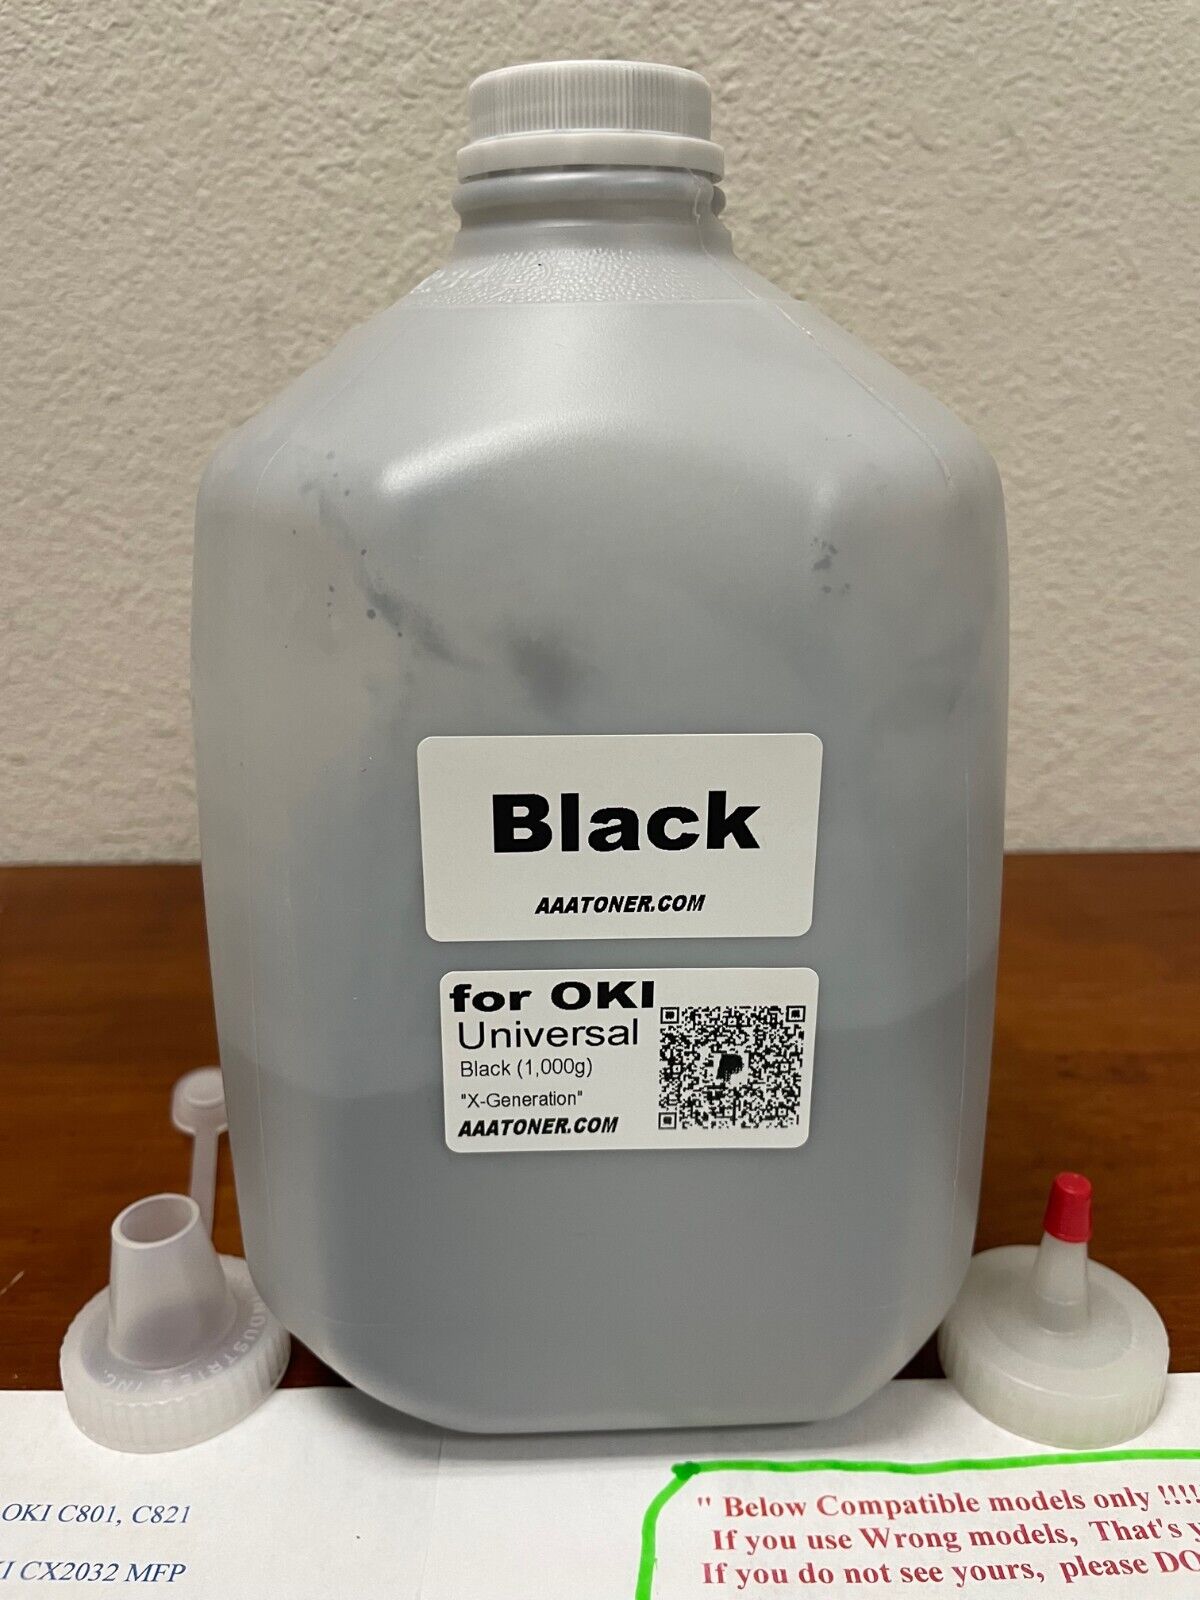 (1,000g) Black Toner Refill for OKI Okidata Color printer UNIVERSAL BULK